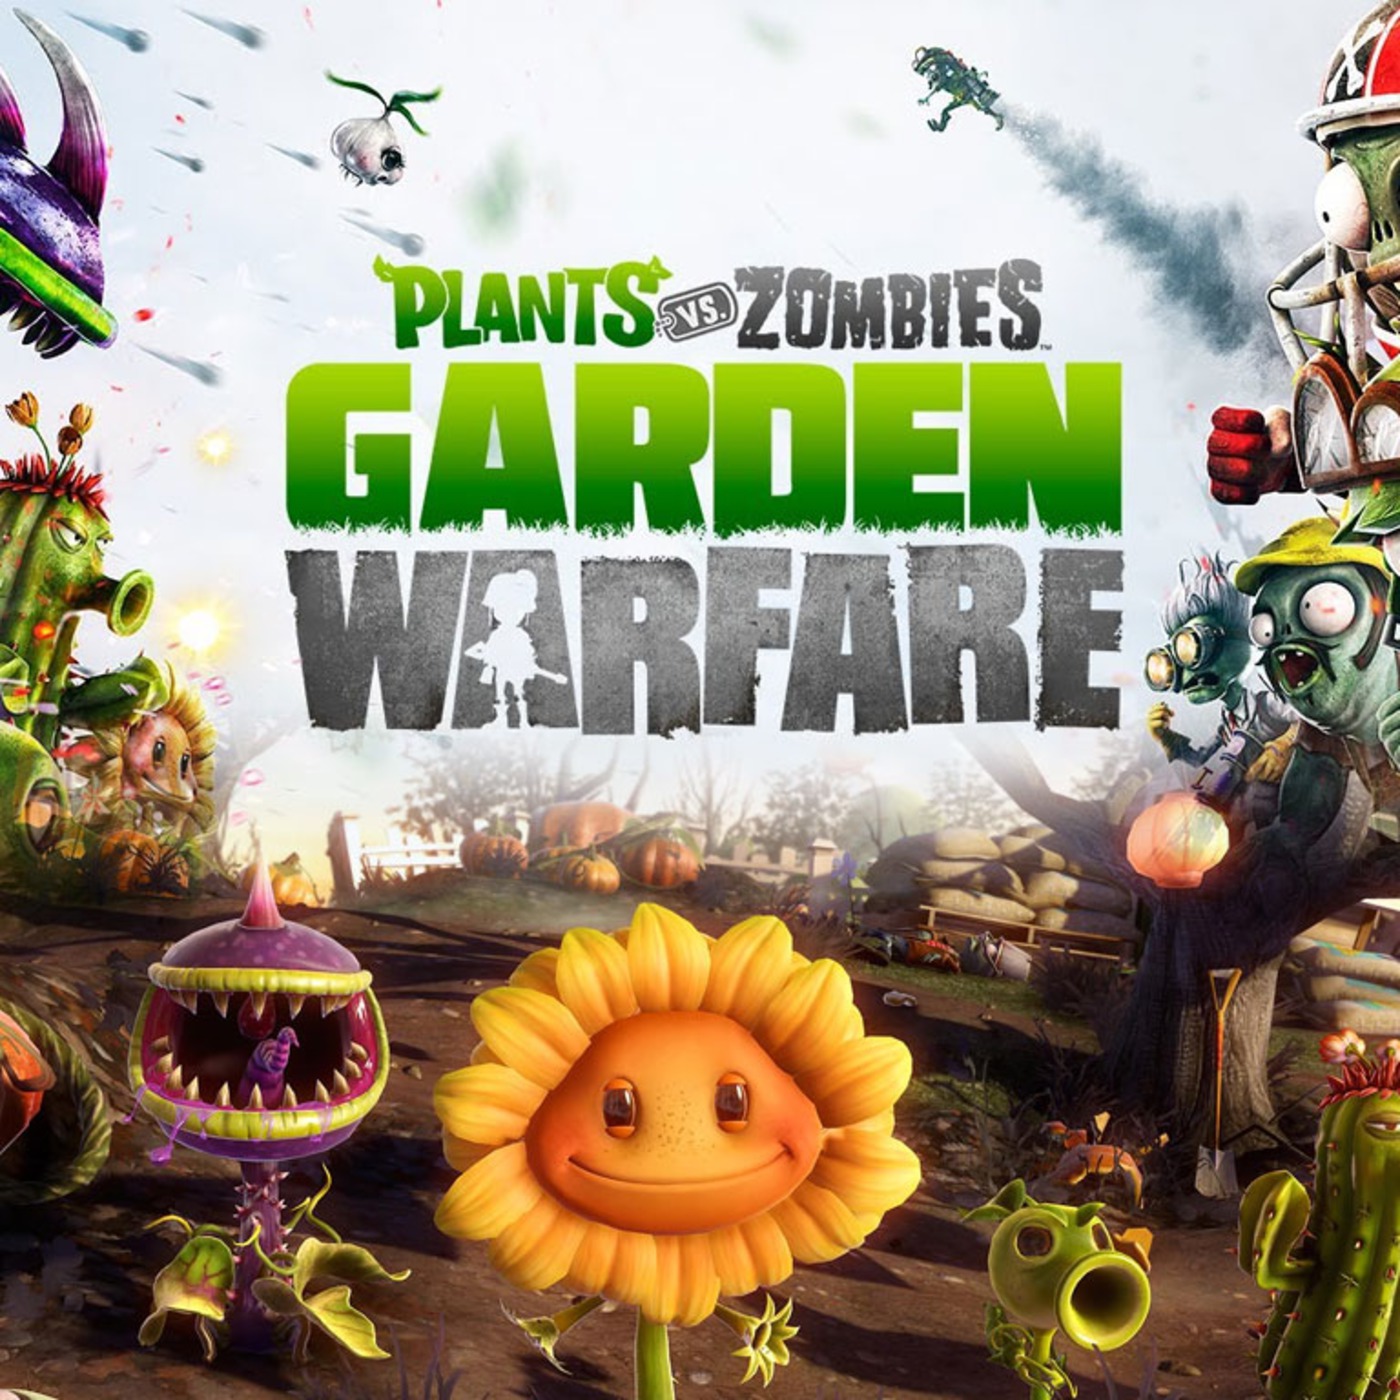 Will plants vs zombies garden warfare be on steam фото 86